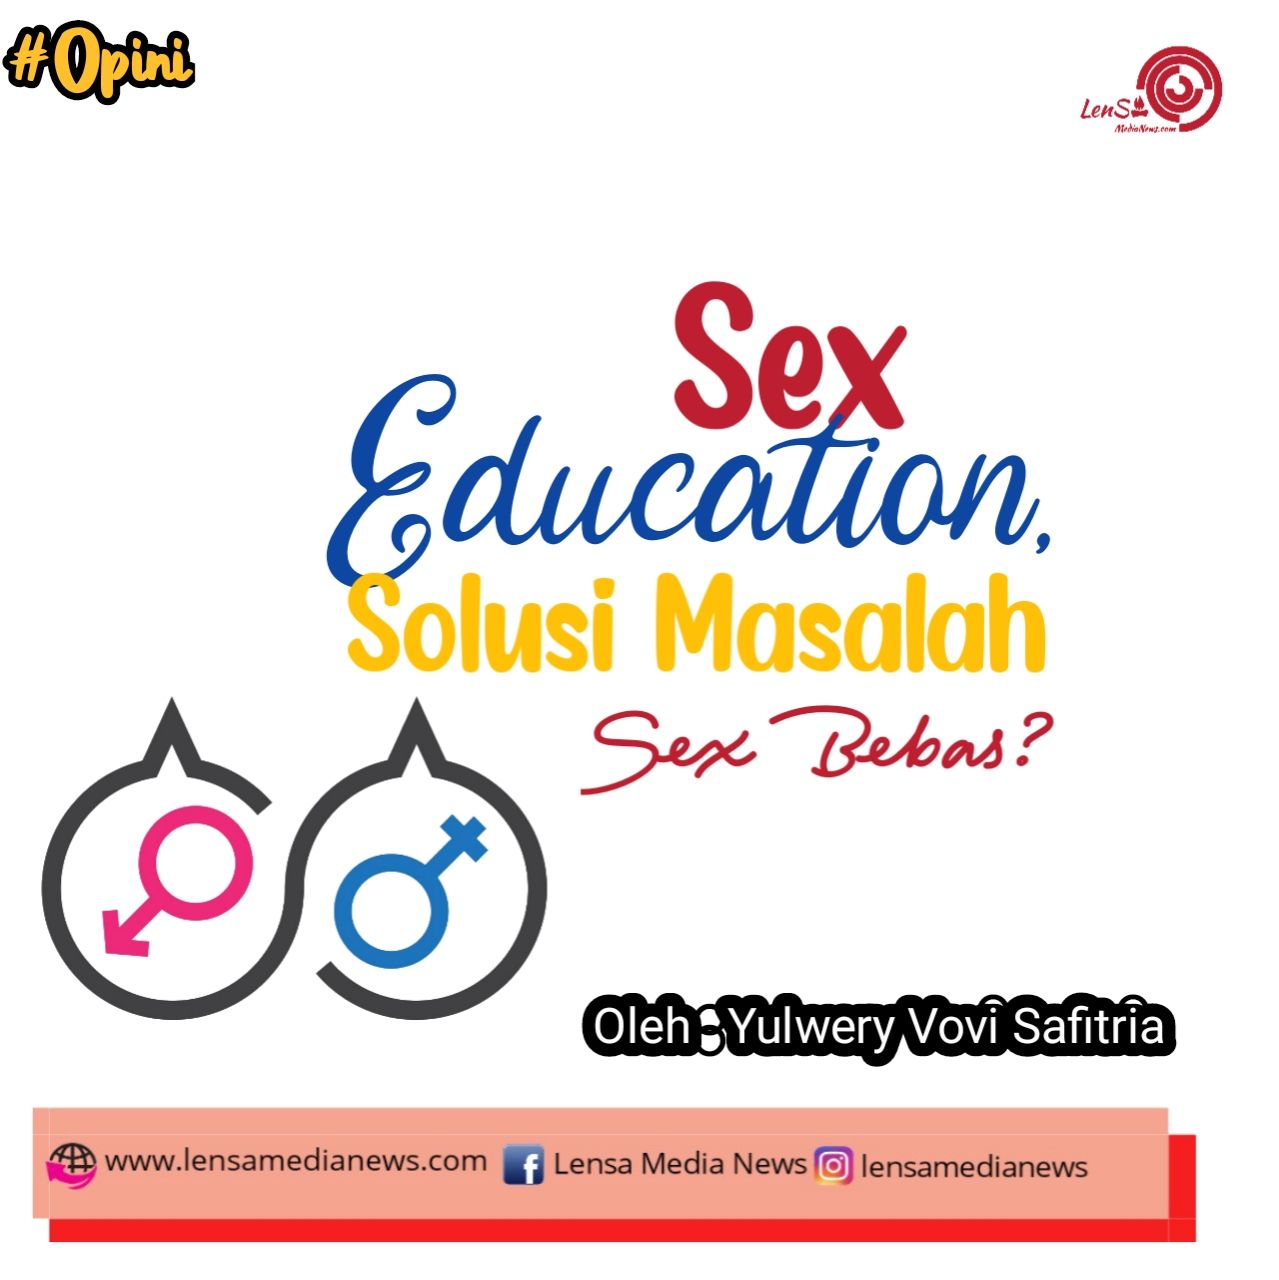 Sex Education Solusi Masalah Seks Bebas Lensa Medianews 8867